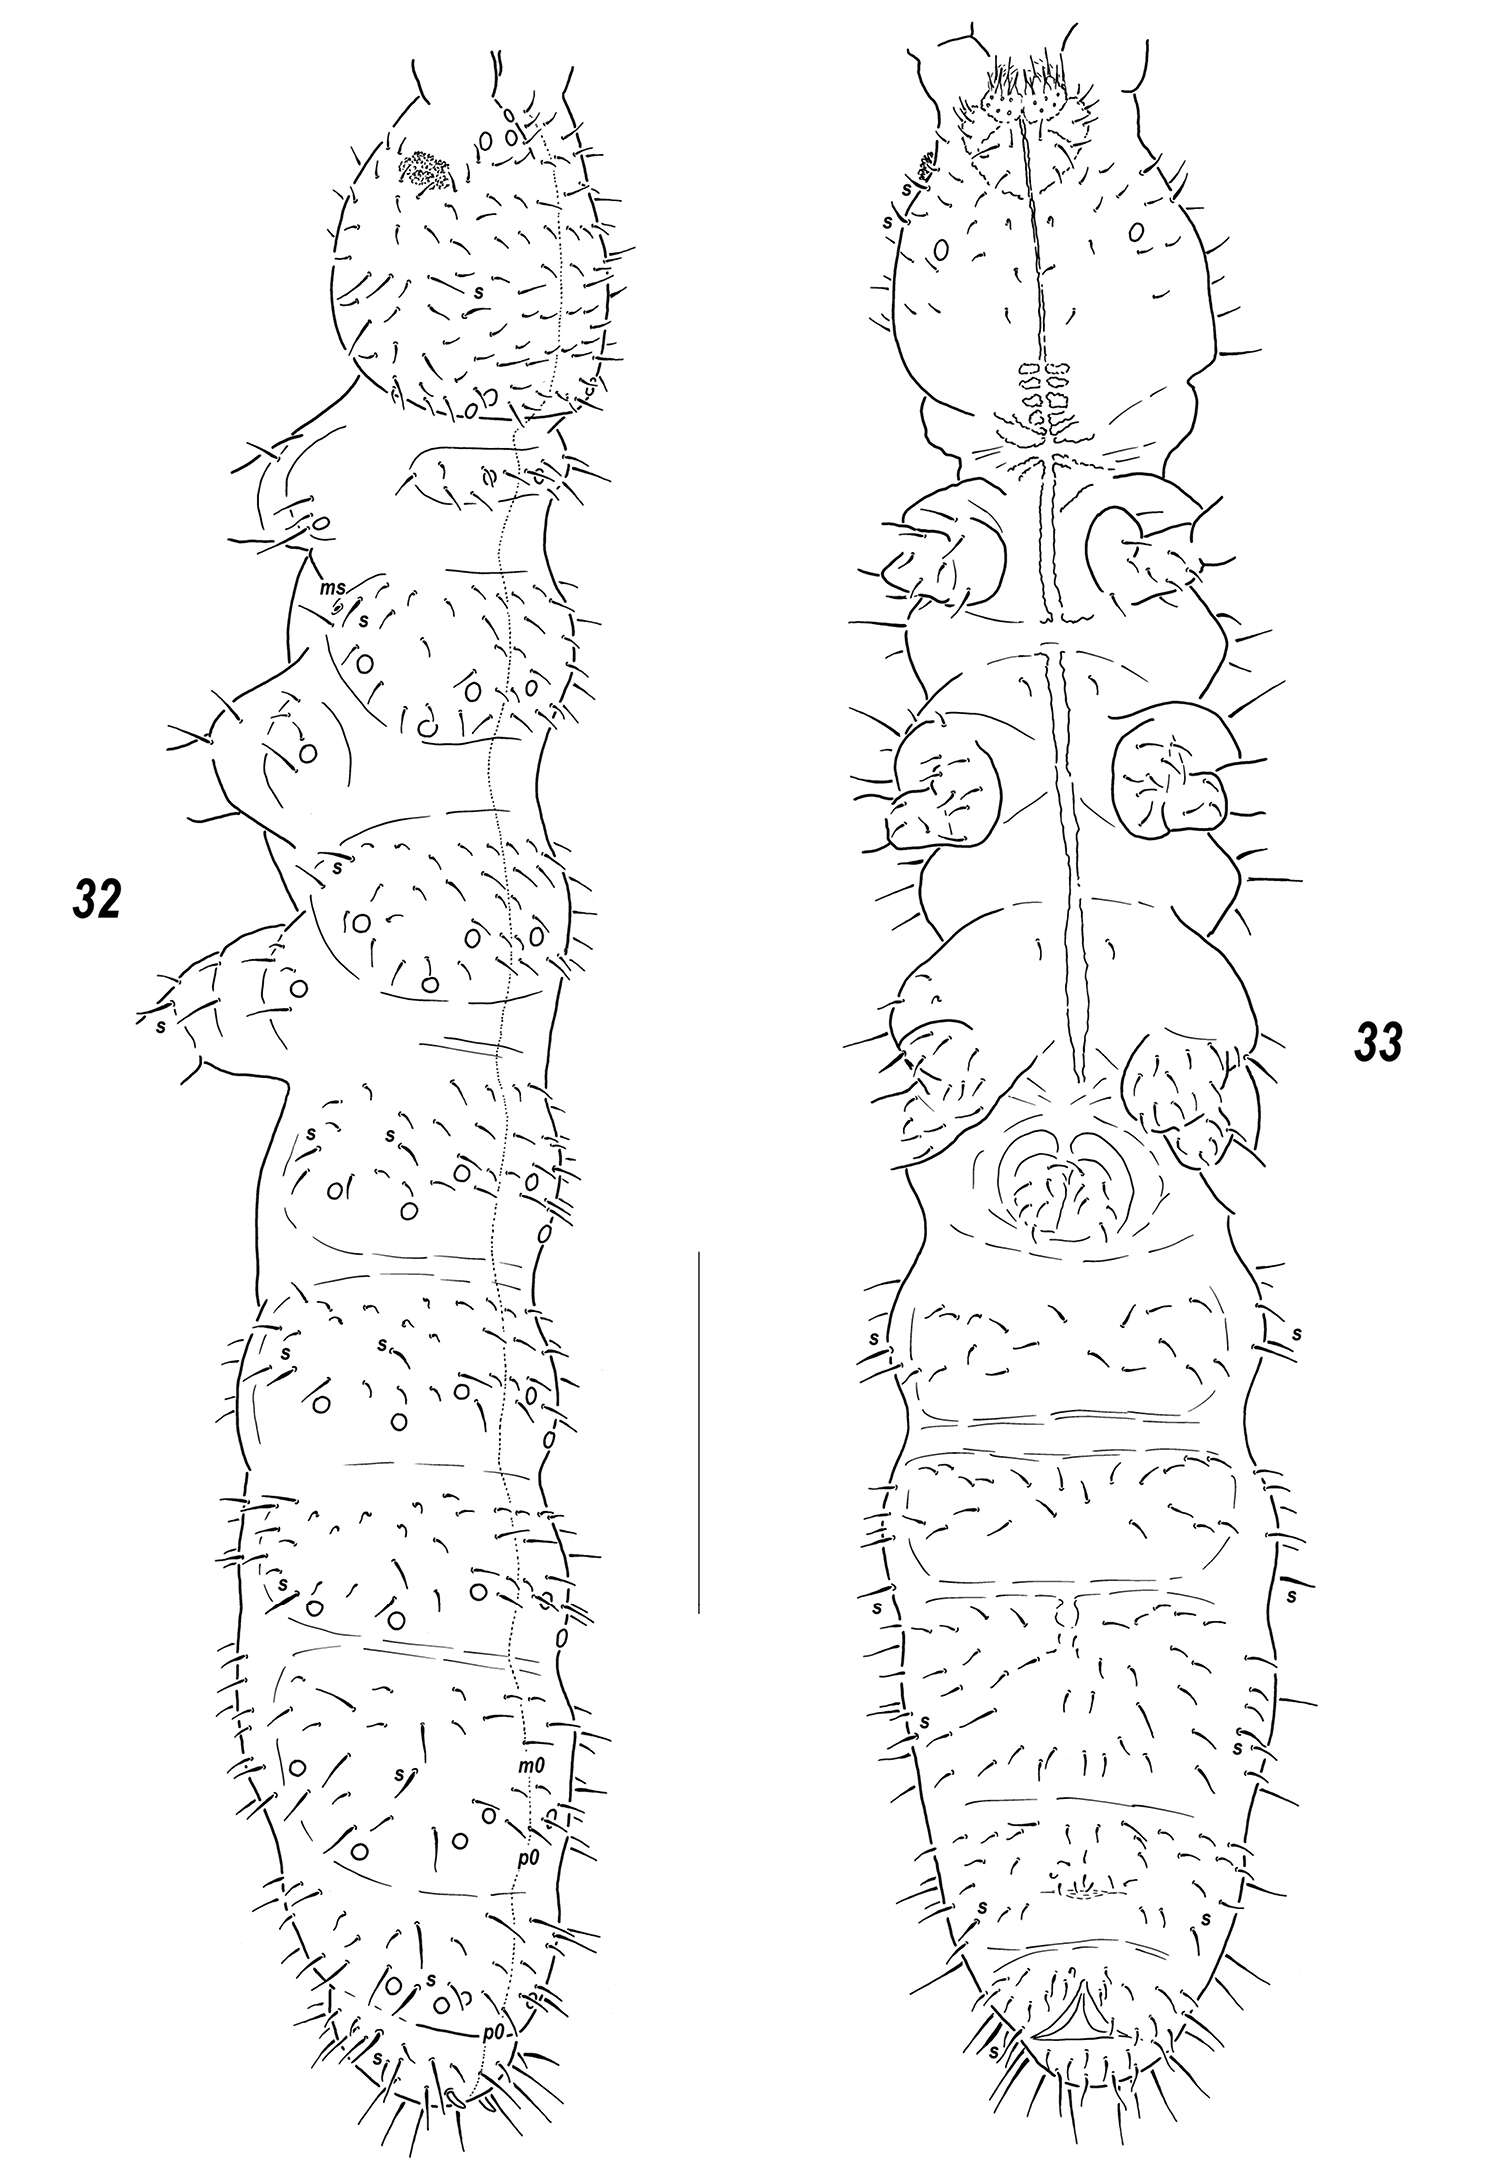 Image of Sensillonychiurus vitimicus Babenko, Chimitova & Stebaeva 2011